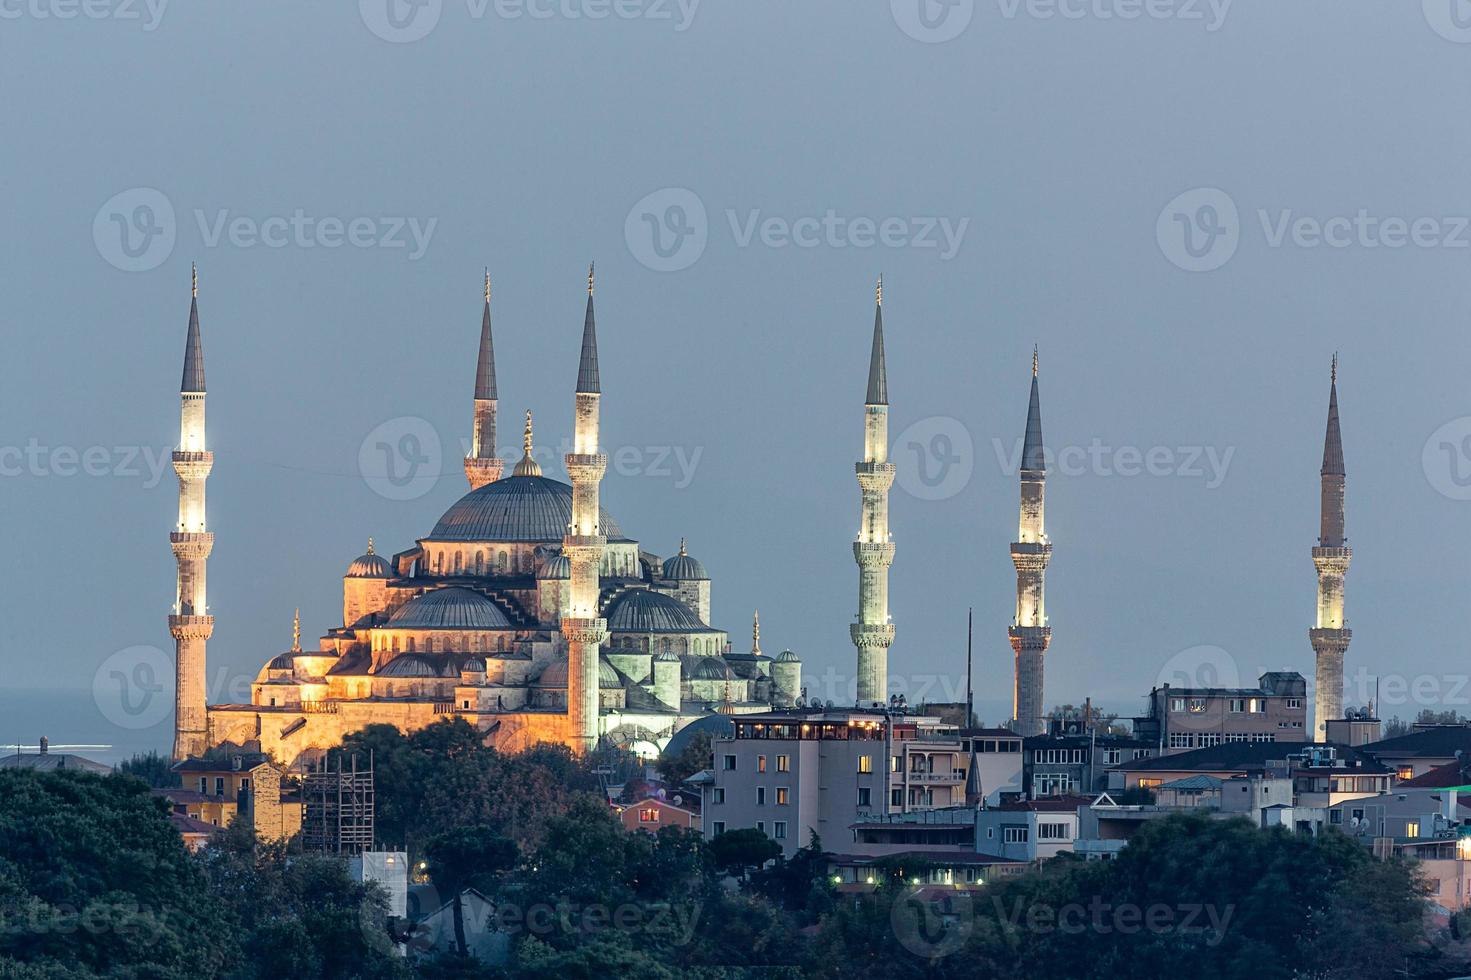 sultan ahmet camii - mesquita azul em Istambul, Turquia. foto